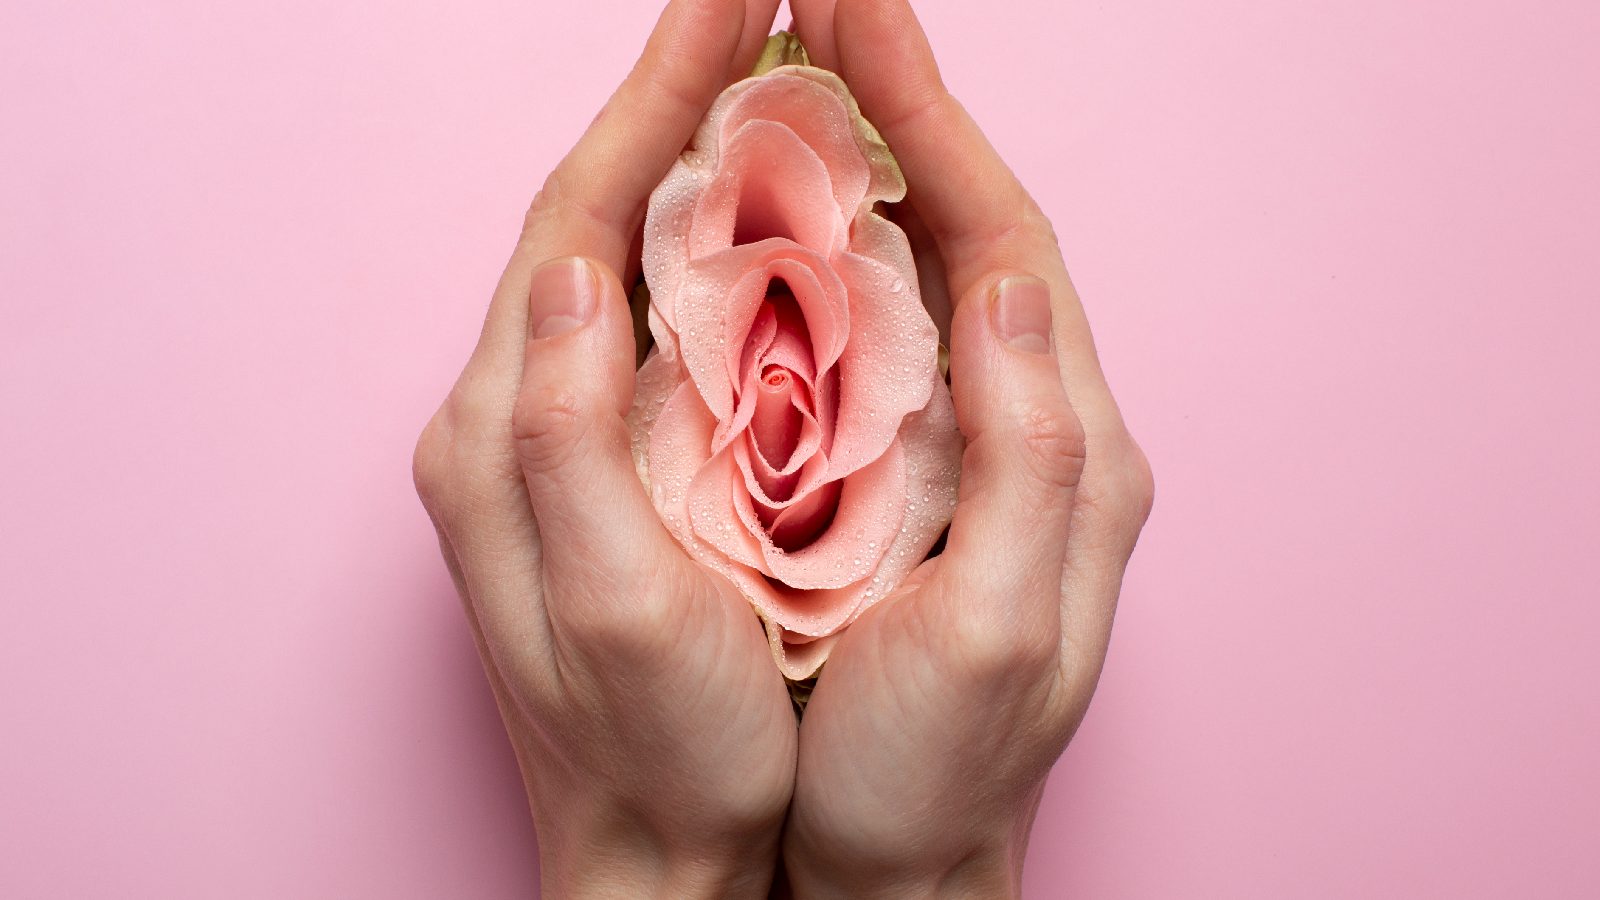 इंटरकोर्स के बाद योनि में खुजली के लिए जिम्मेदार हो सकते हैं ये 5 कारण, जानें इससे राहत का तरीका